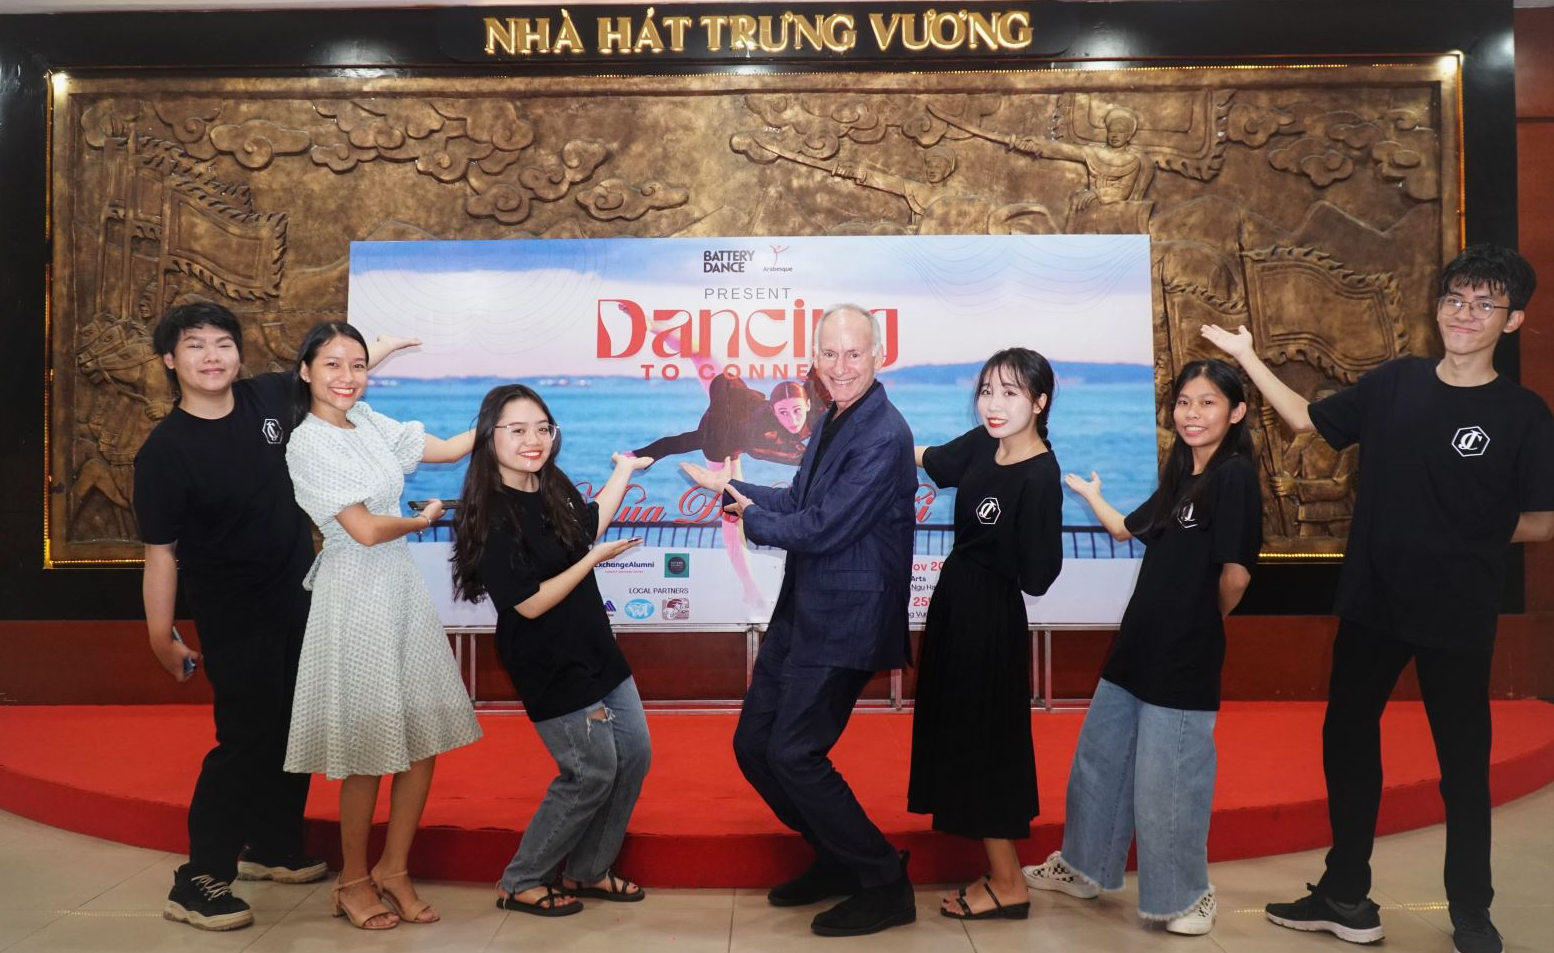 “Dancing To Connect Vietnam” - Khi nghệ thuật múa lên ngôi